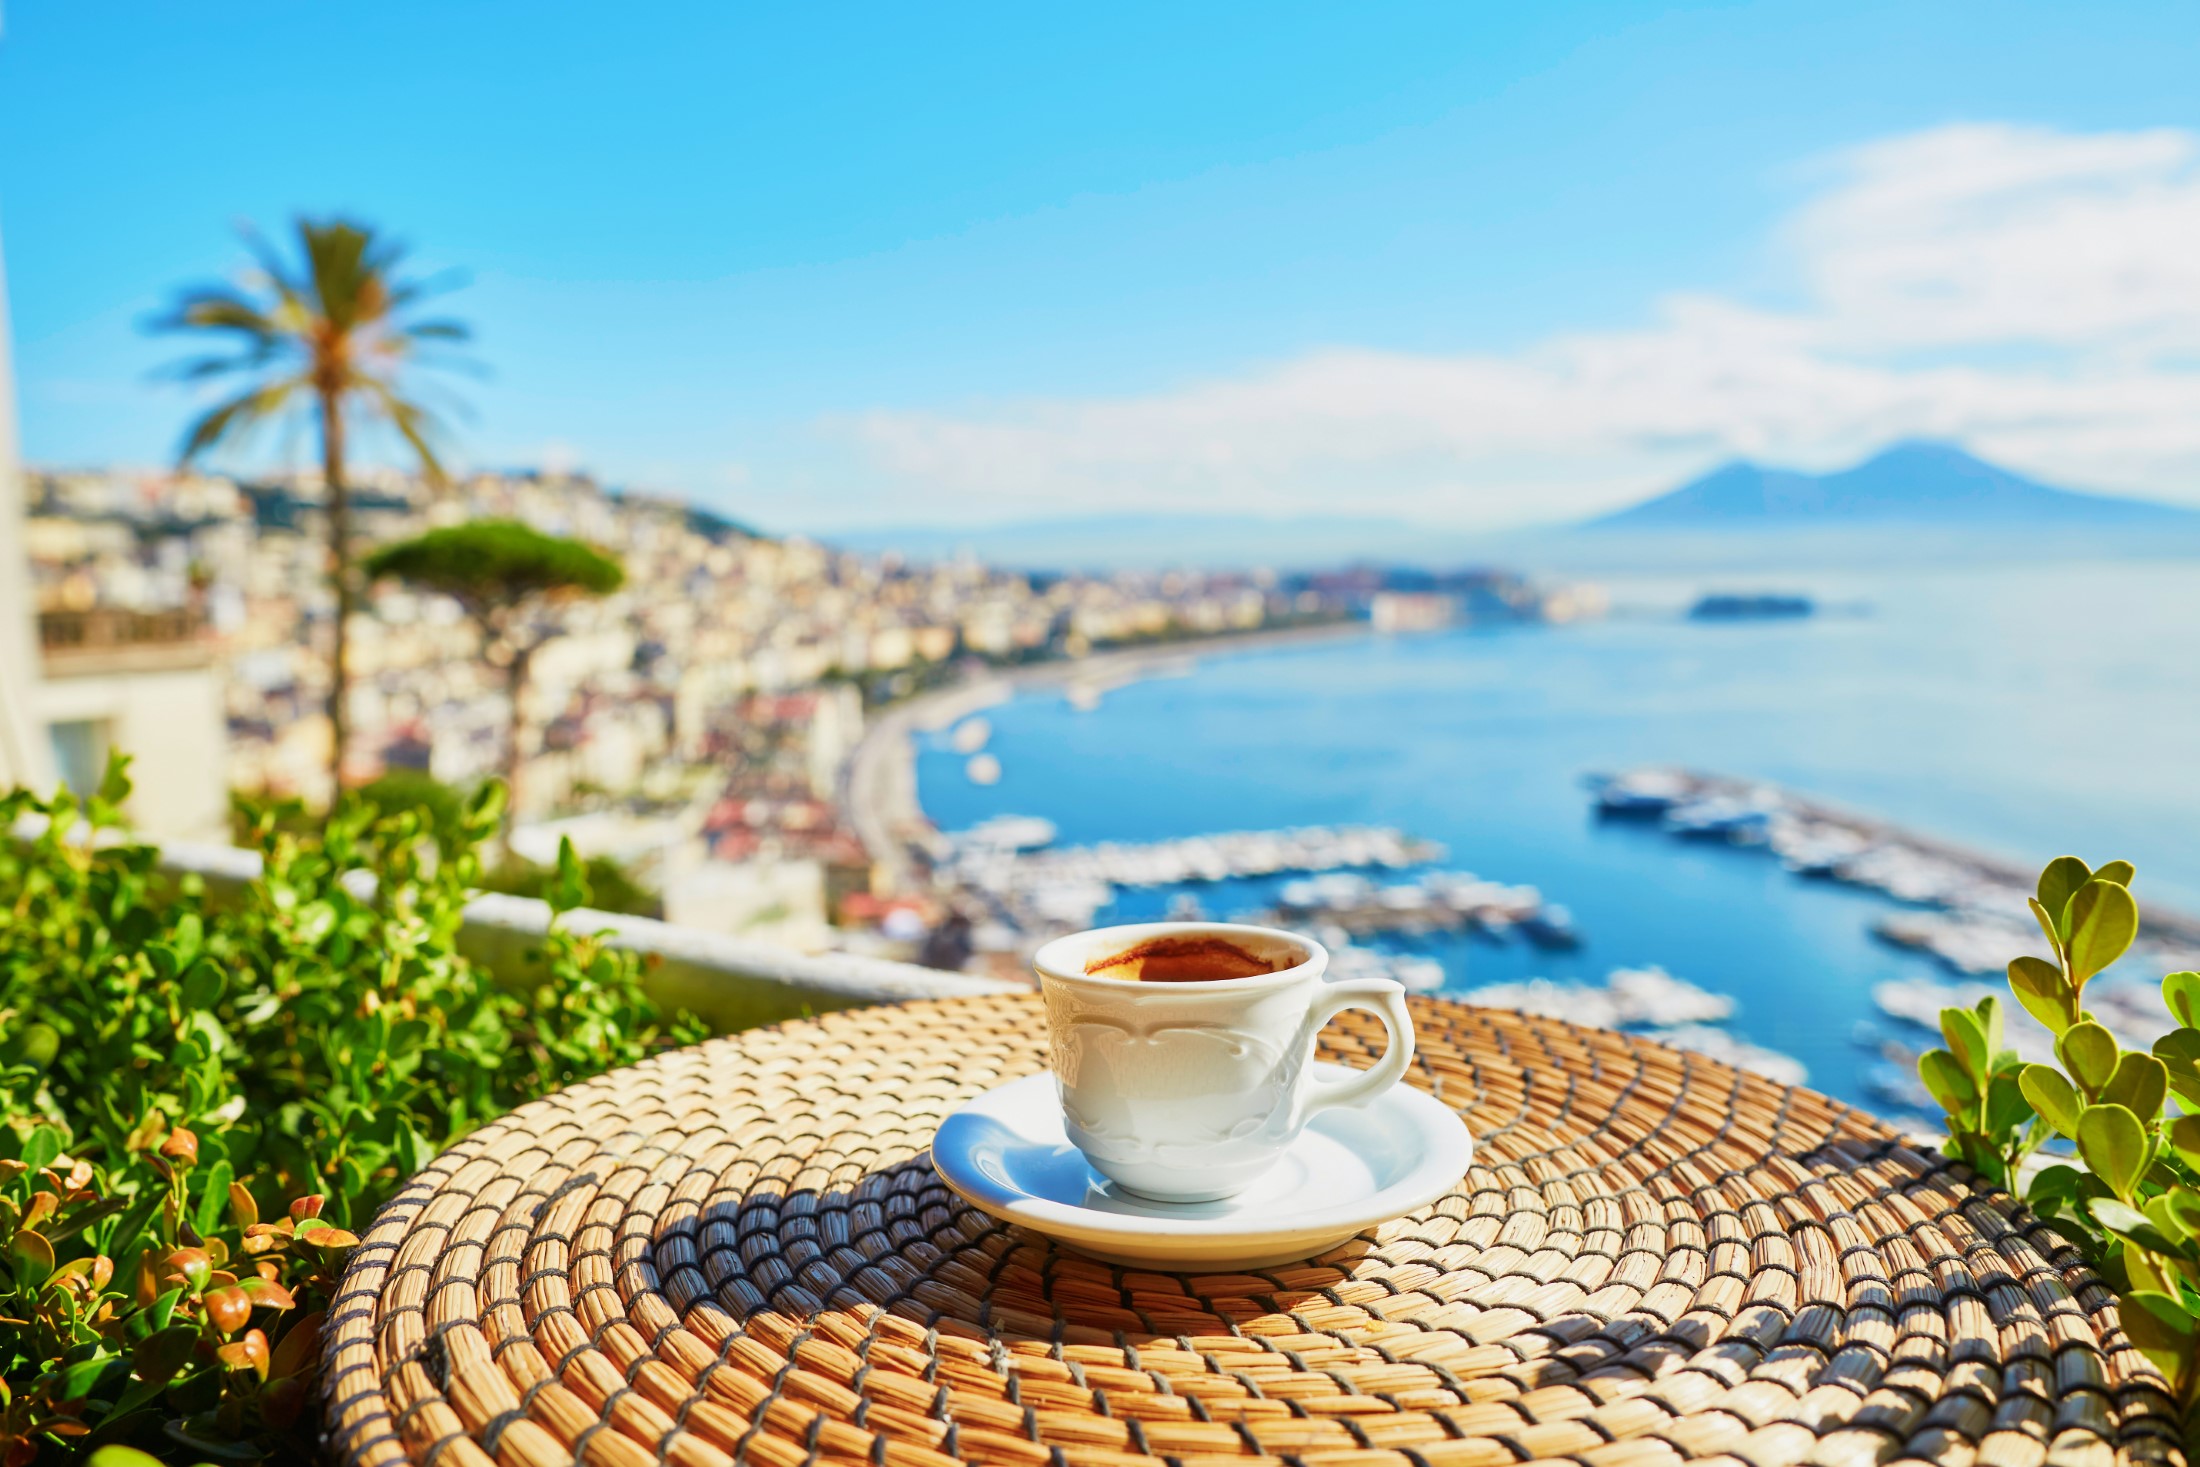 Wakacje w Neapolu, Cup,Of,Fresh,Espresso,Coffee,In,A,Cafe,With,View